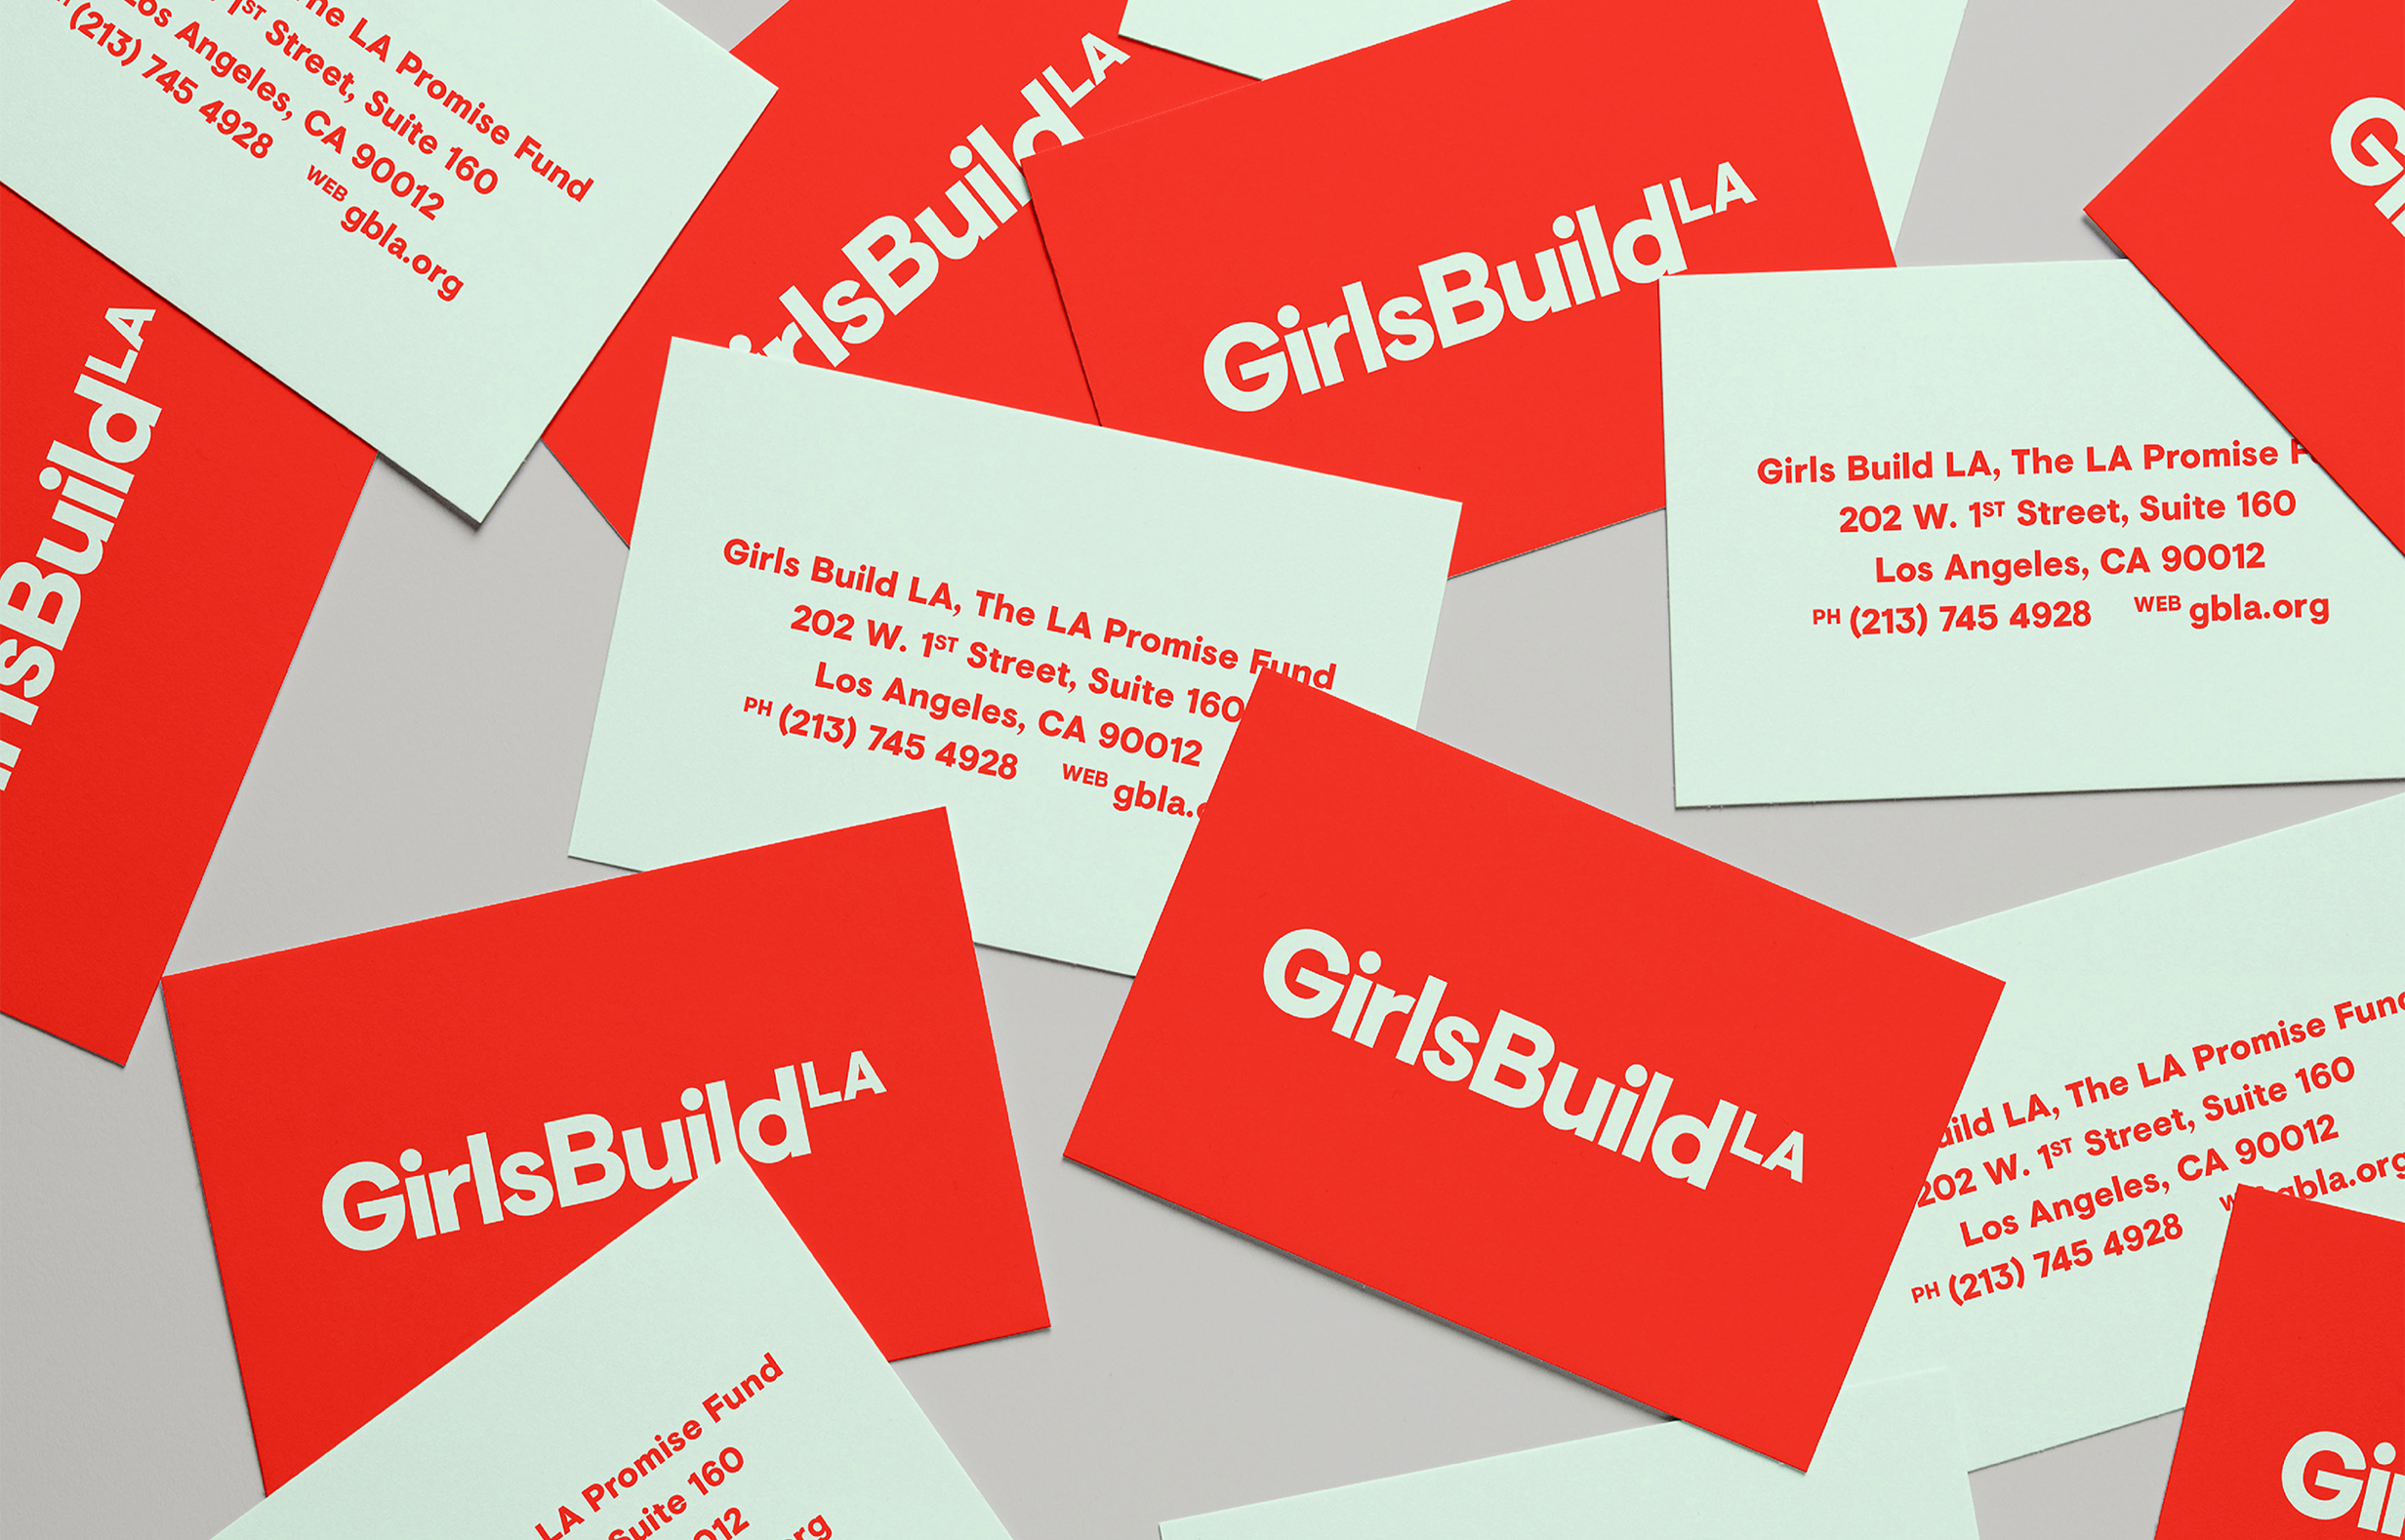 Girls Build LA branding